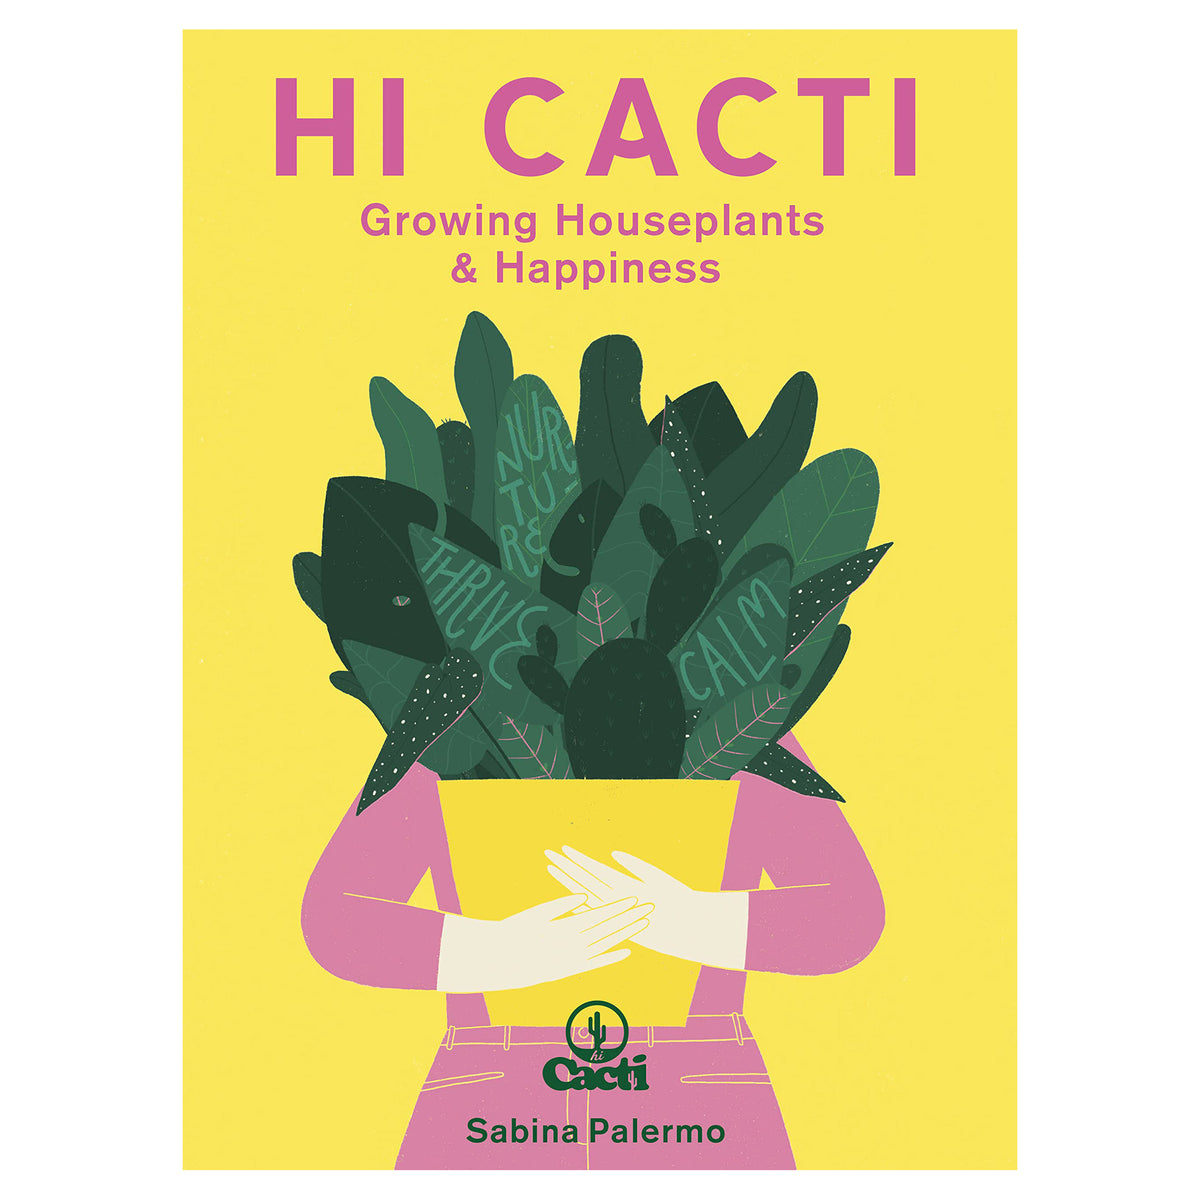 Hi Cacti Growing Houseplants and Happiness